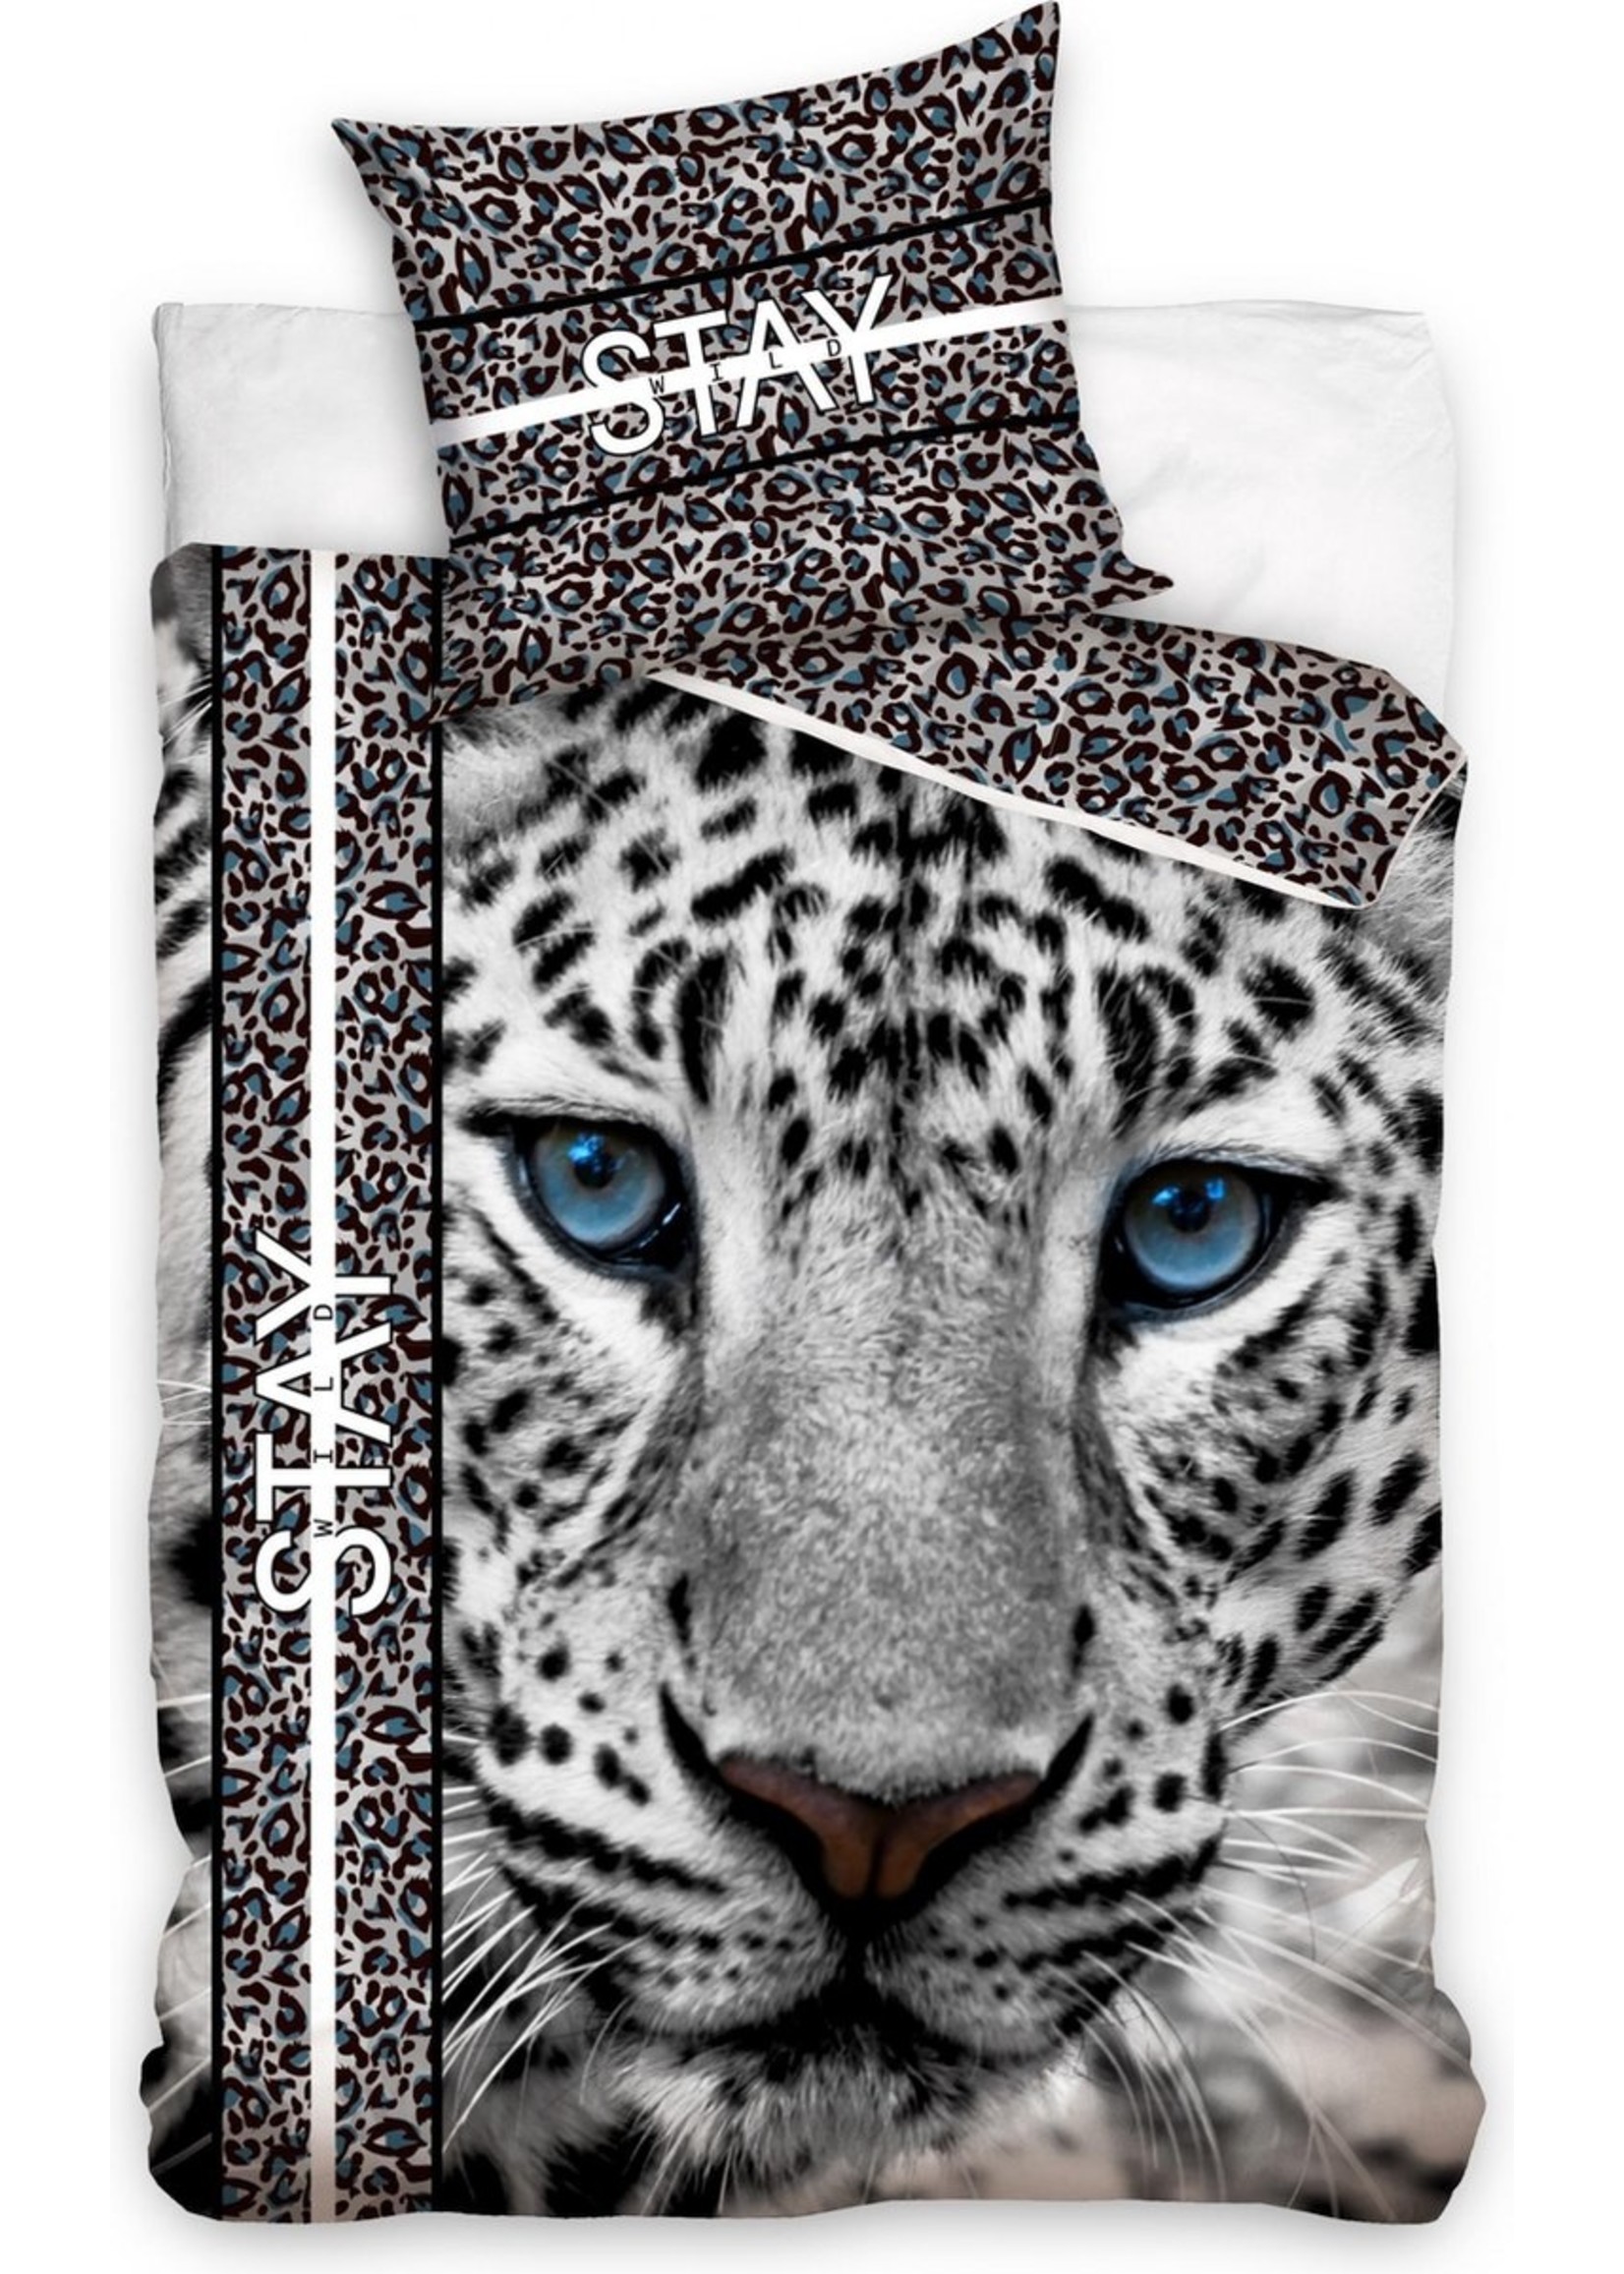 Tiger Duvet Cover 140x200cm 100%Cotton Pillowcase 70x90cm - Copy